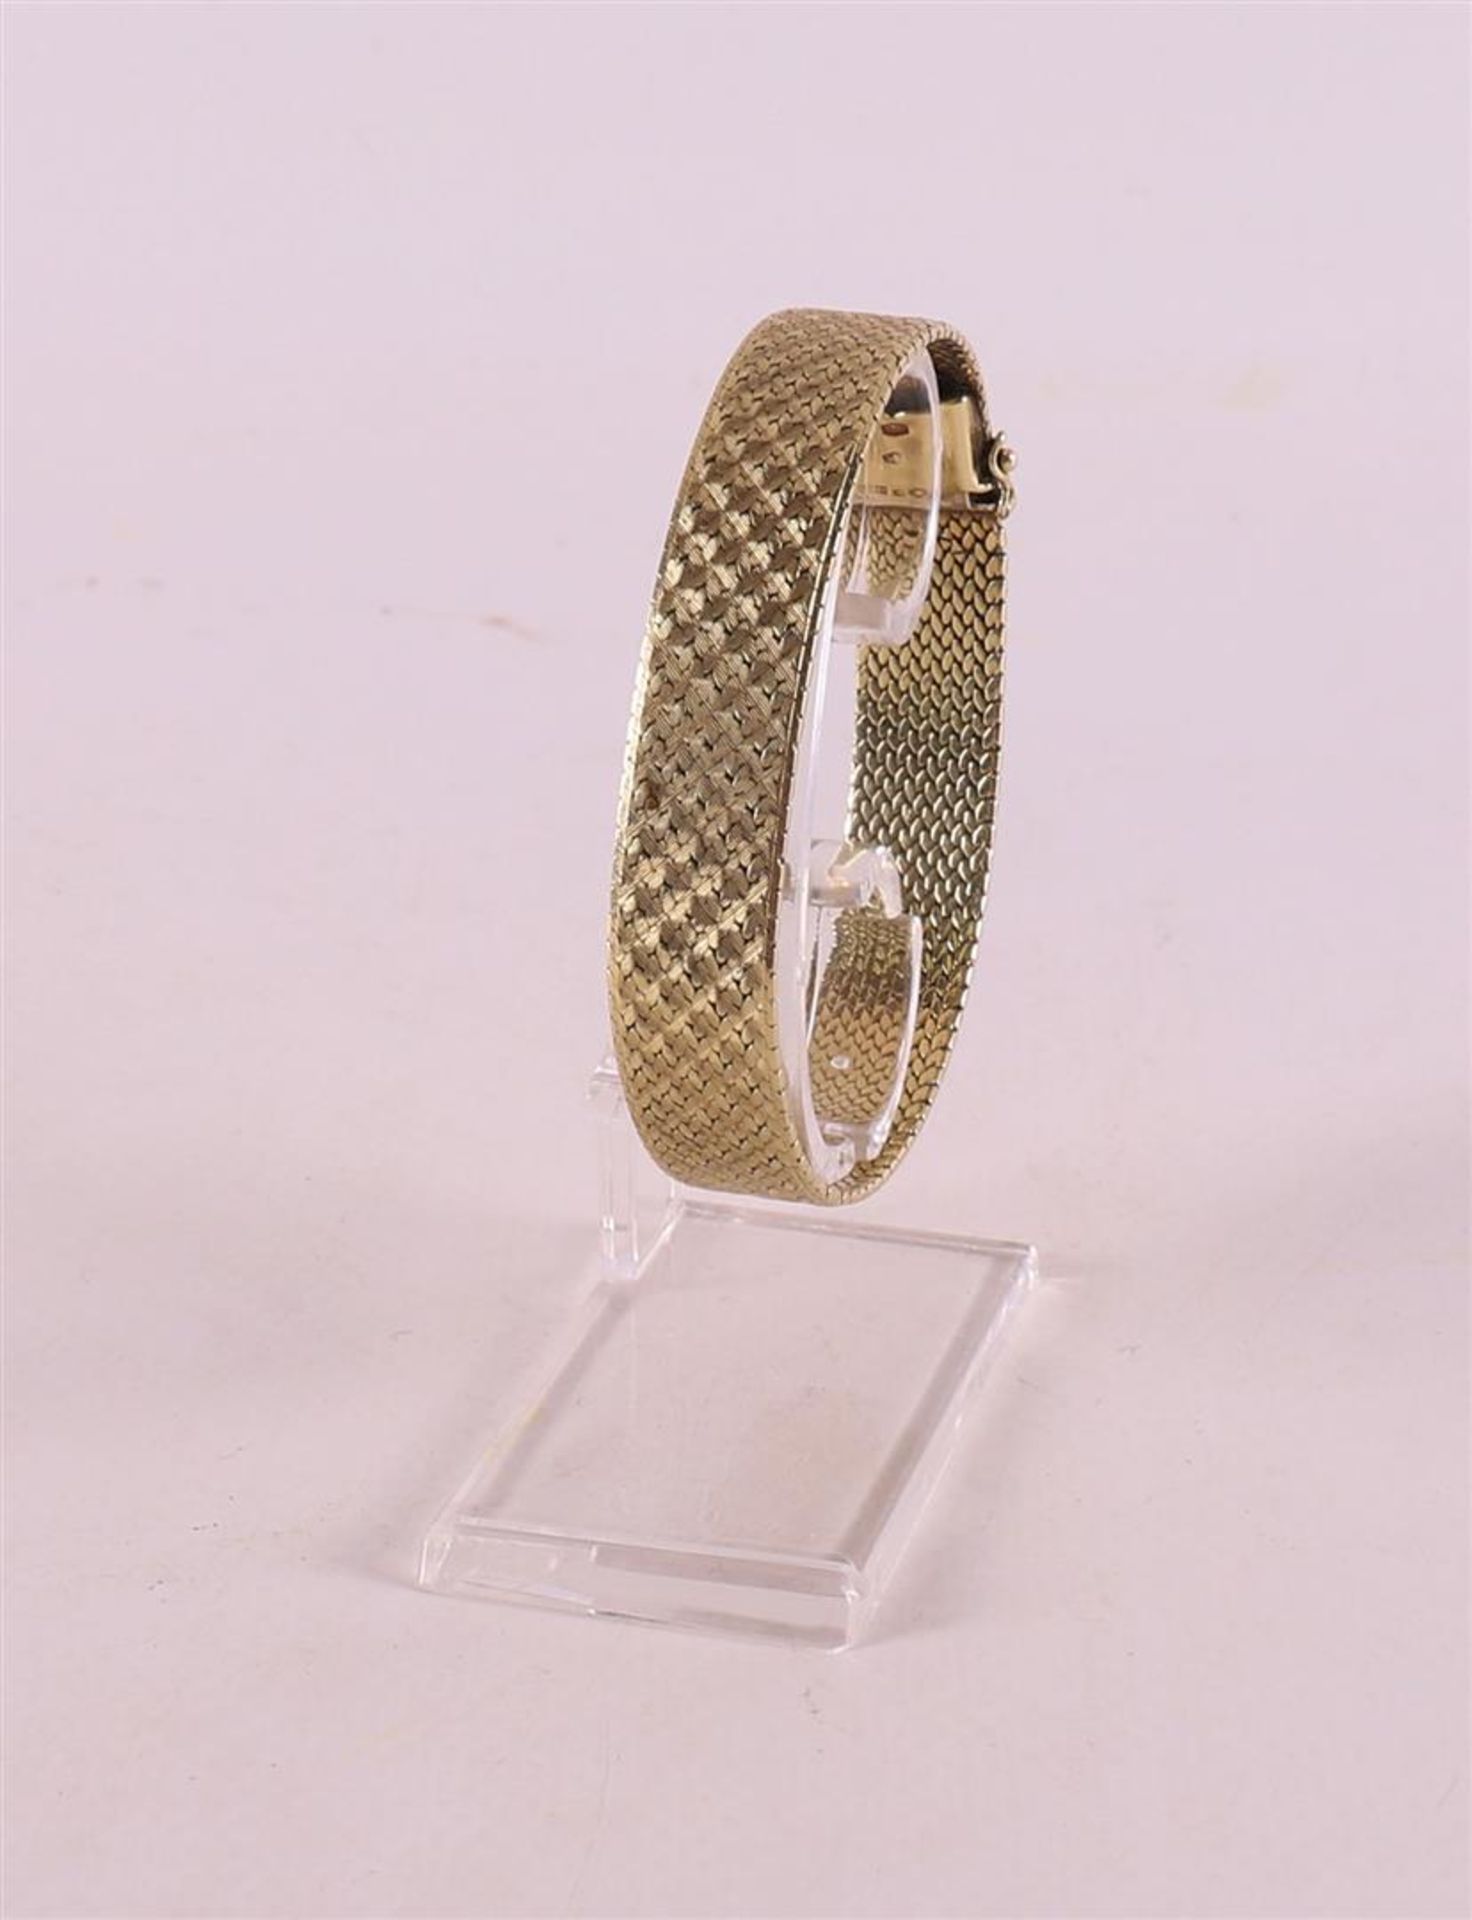 A 14 kt 585/1000 gold bracelet, weight 36.5 grams.